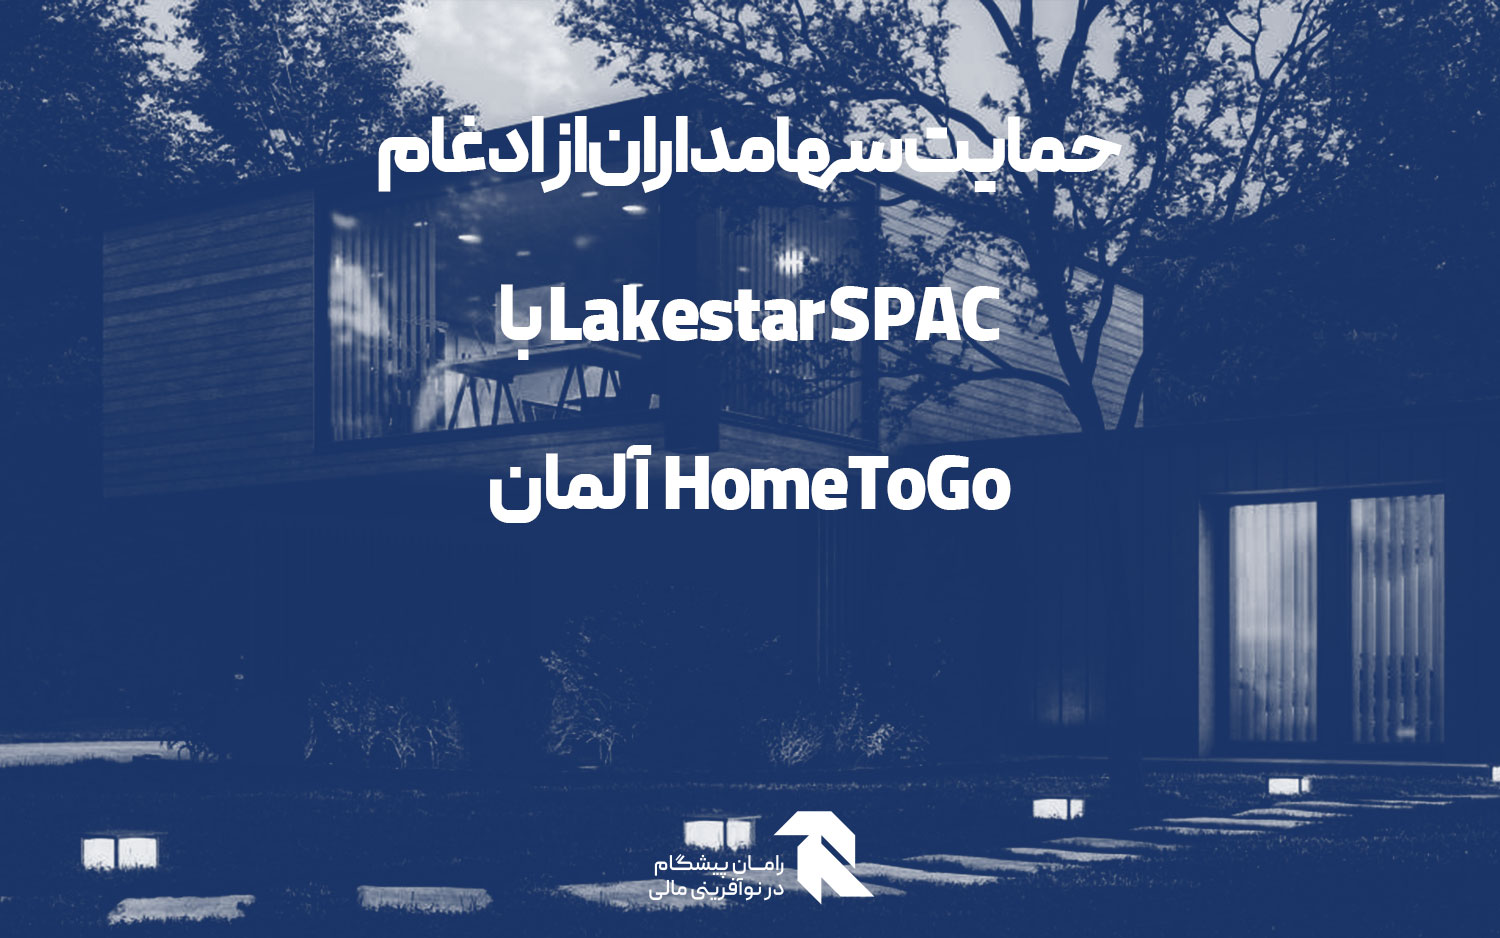 حمایت سهامداران از ادغام Lakestar SPAC با HomeToGo آلمان